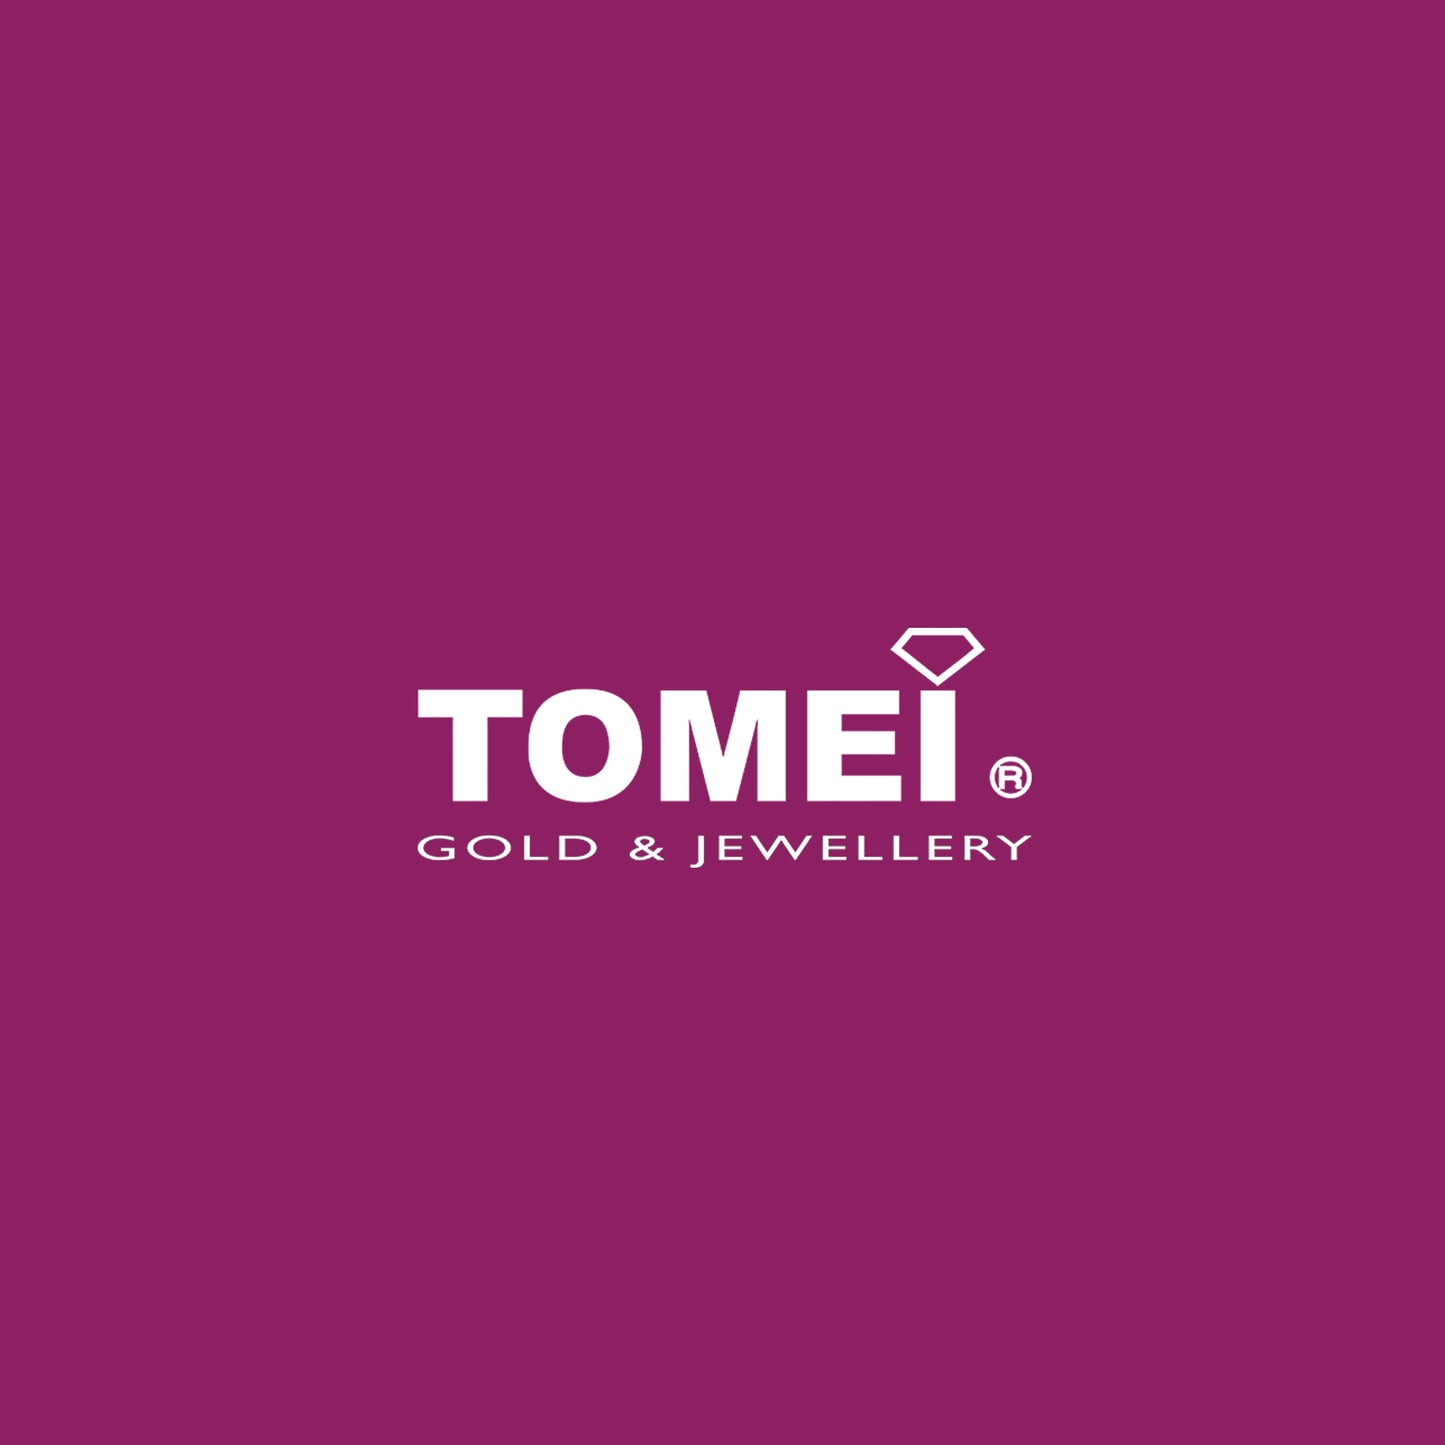 TOMEI x Hello Kitty in Red Earrings, Yellow Gold 916  (HK-YG1180E-EC-2.35)